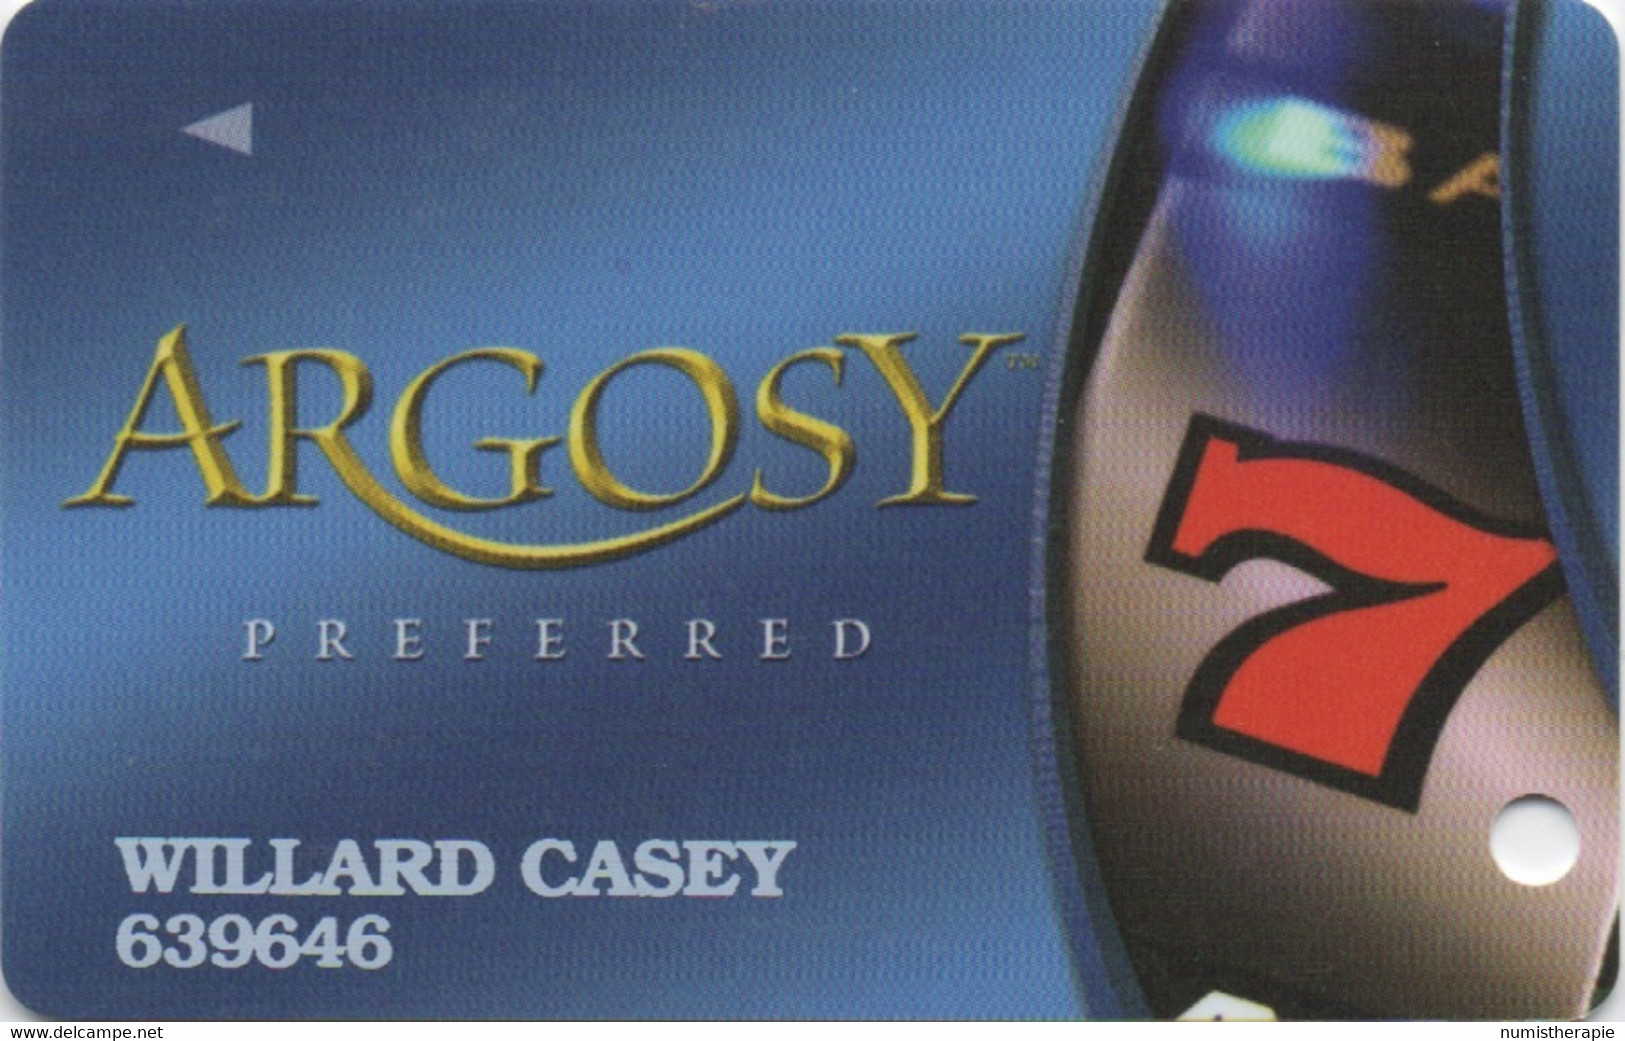 Argosy Casino Preferred : IA IL IN LA MO - Casino Cards